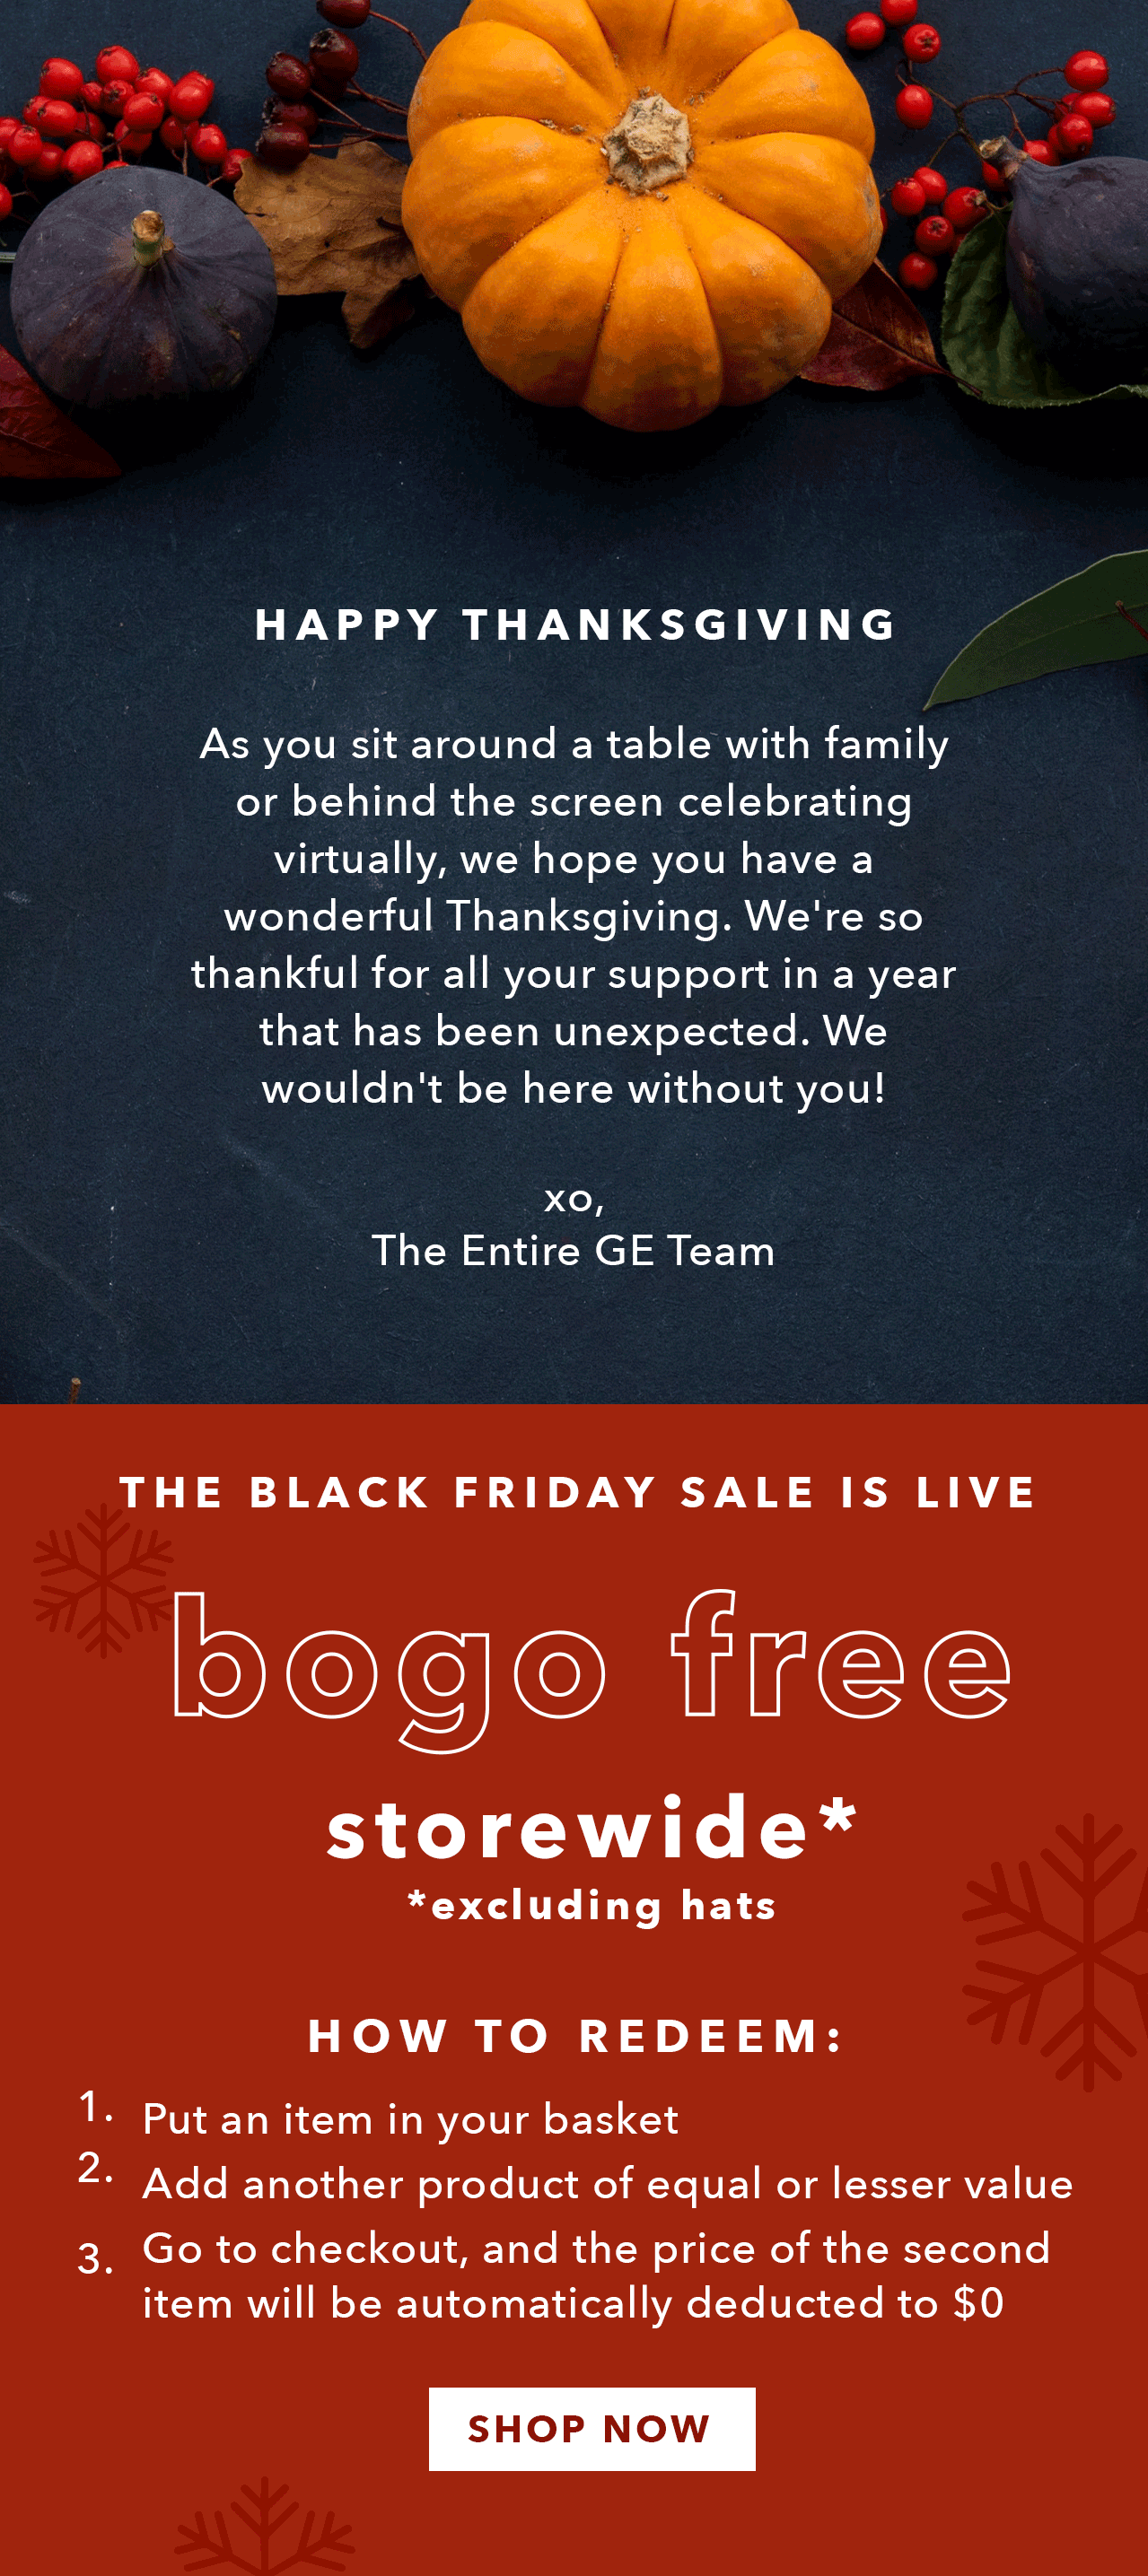 Shop Black Friday Deals